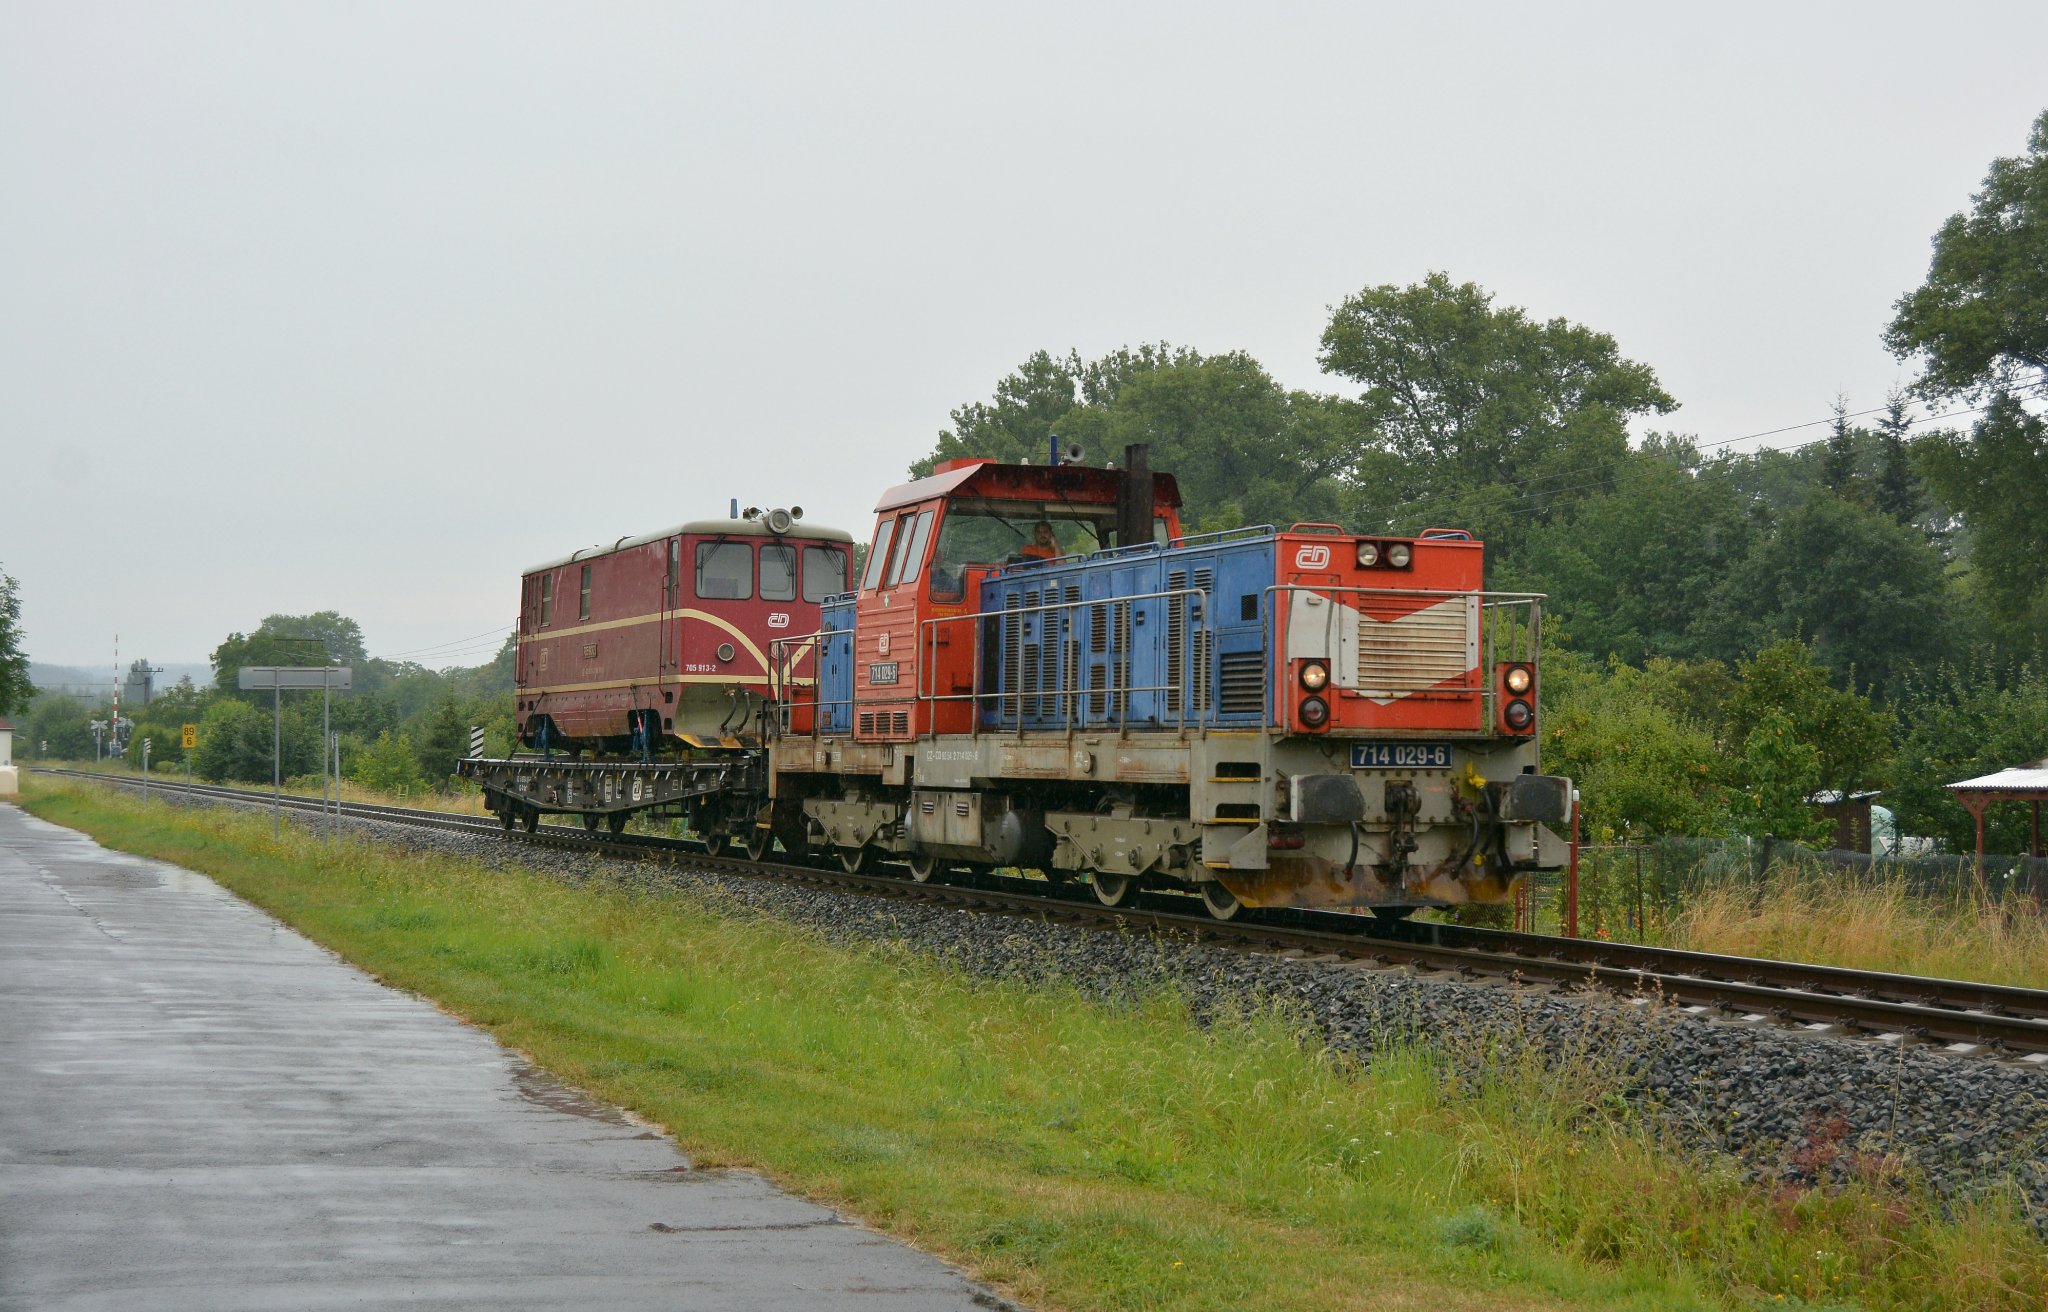 Odvoz lokomotivy 705 913-2 z Třemešné. Foto: Matyáš Ruprecht / FB stránky Úzkorozchodná trať Třemešná ve Slezsku - Osoblaha